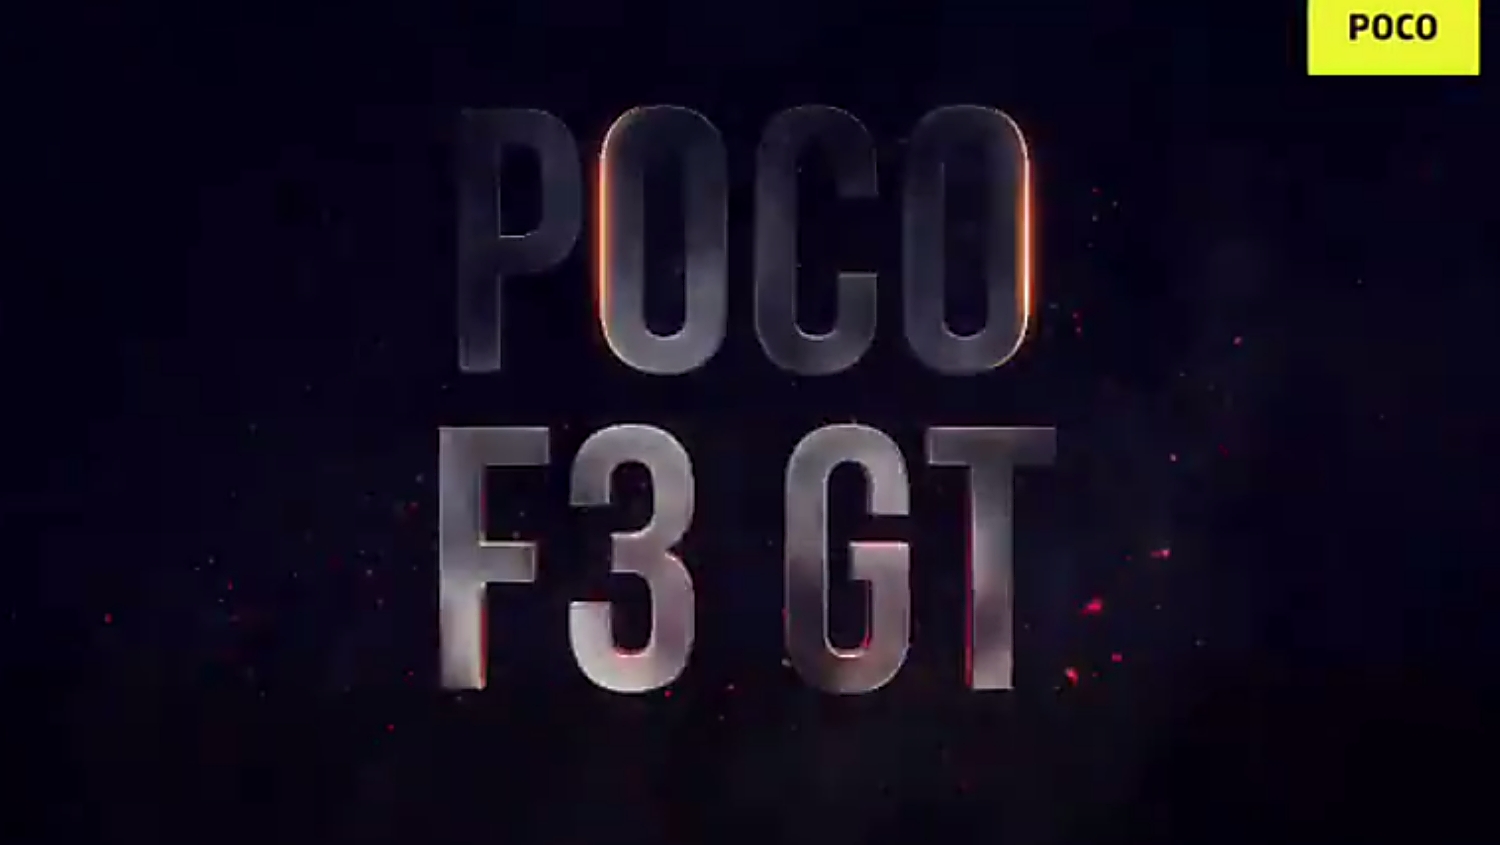 Poco F3 GT 001